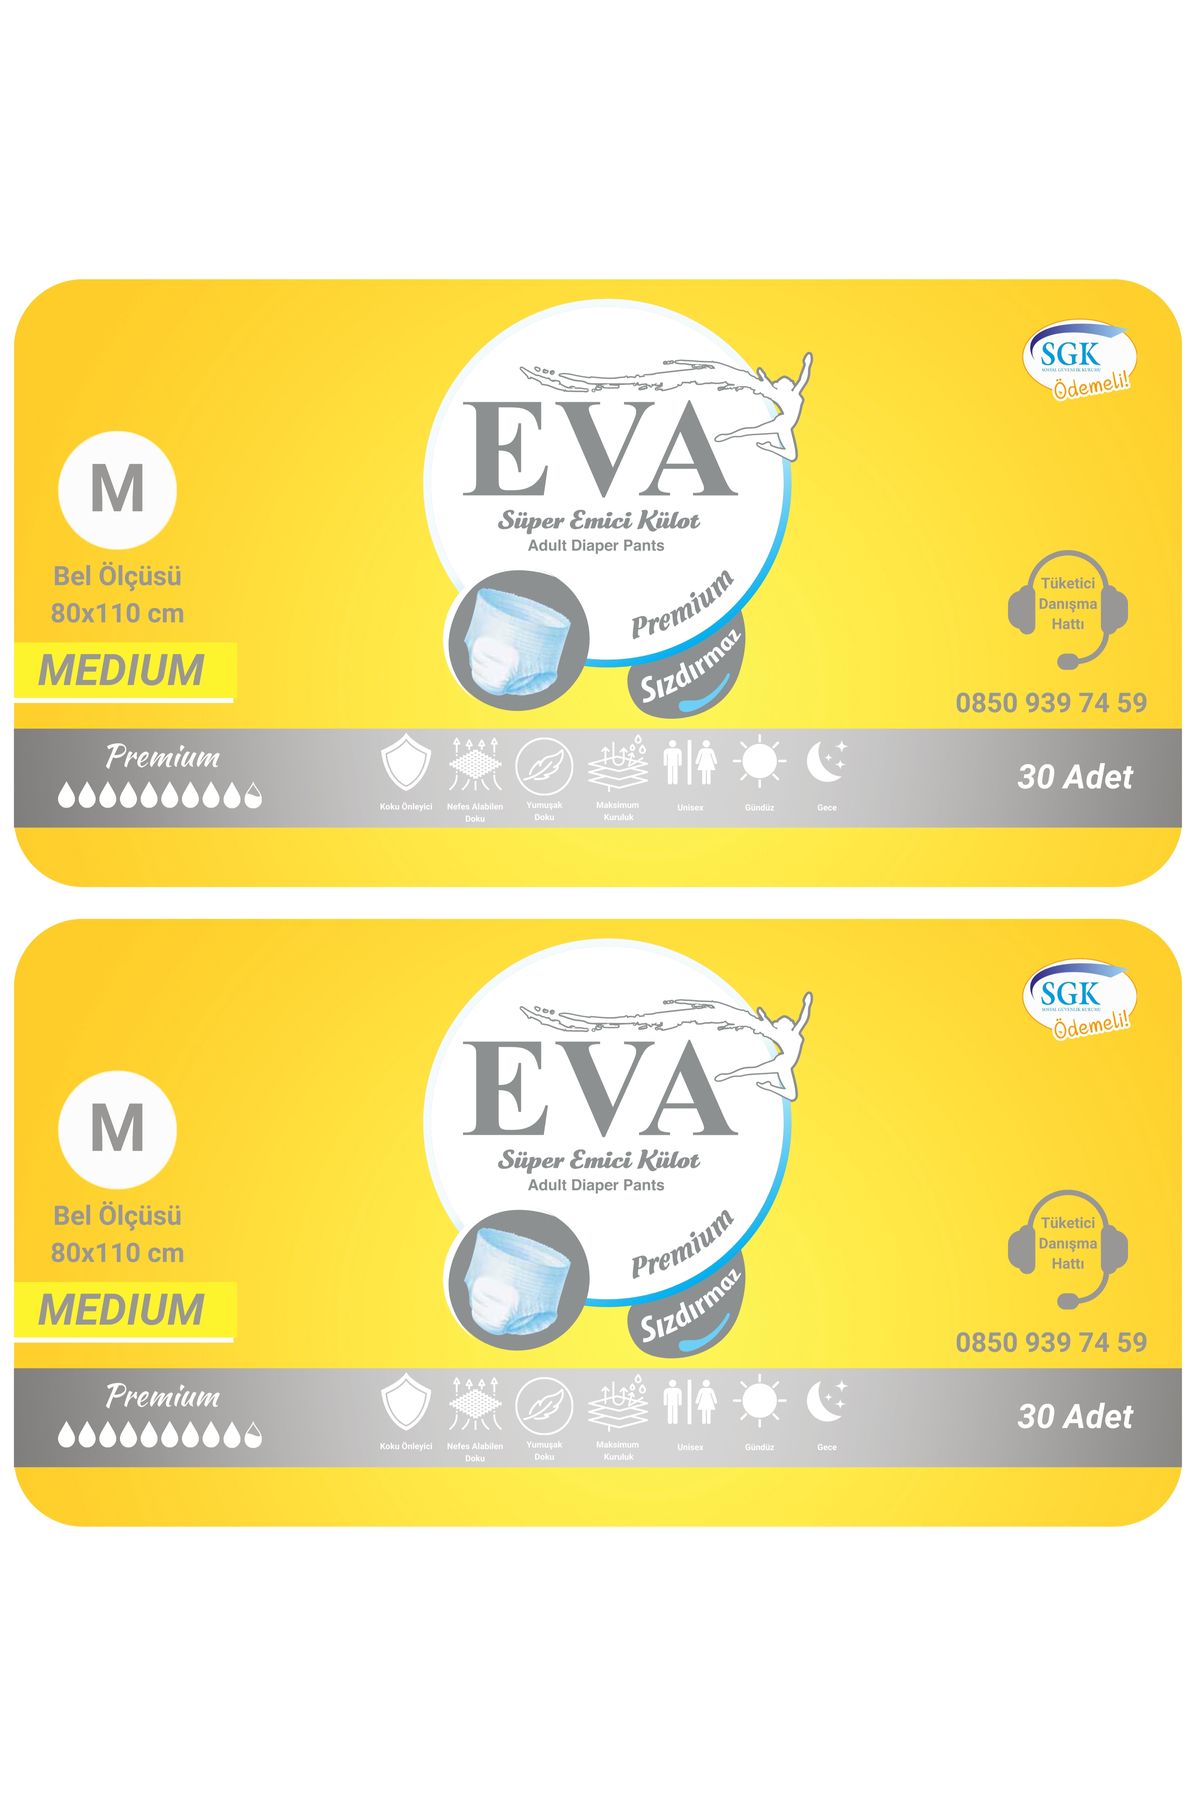 EVA Premium Külot 60 Adet Medium Kadın Erkek Hasta Bezi